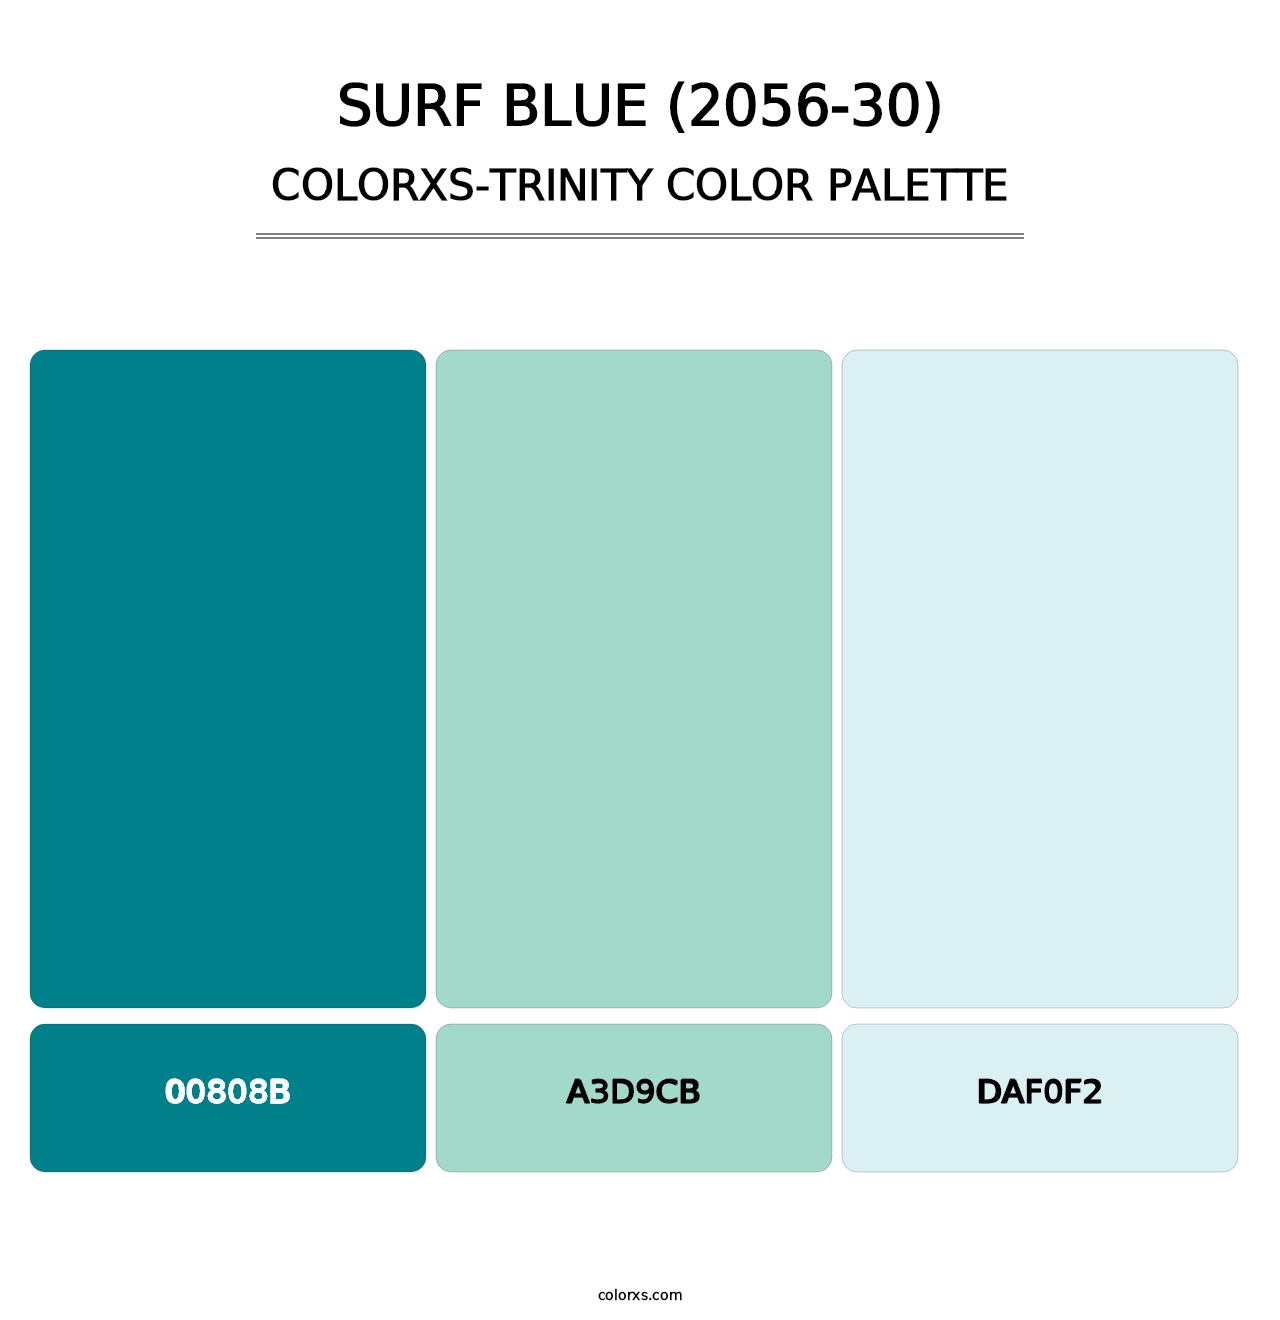 Surf Blue (2056-30) - Colorxs Trinity Palette